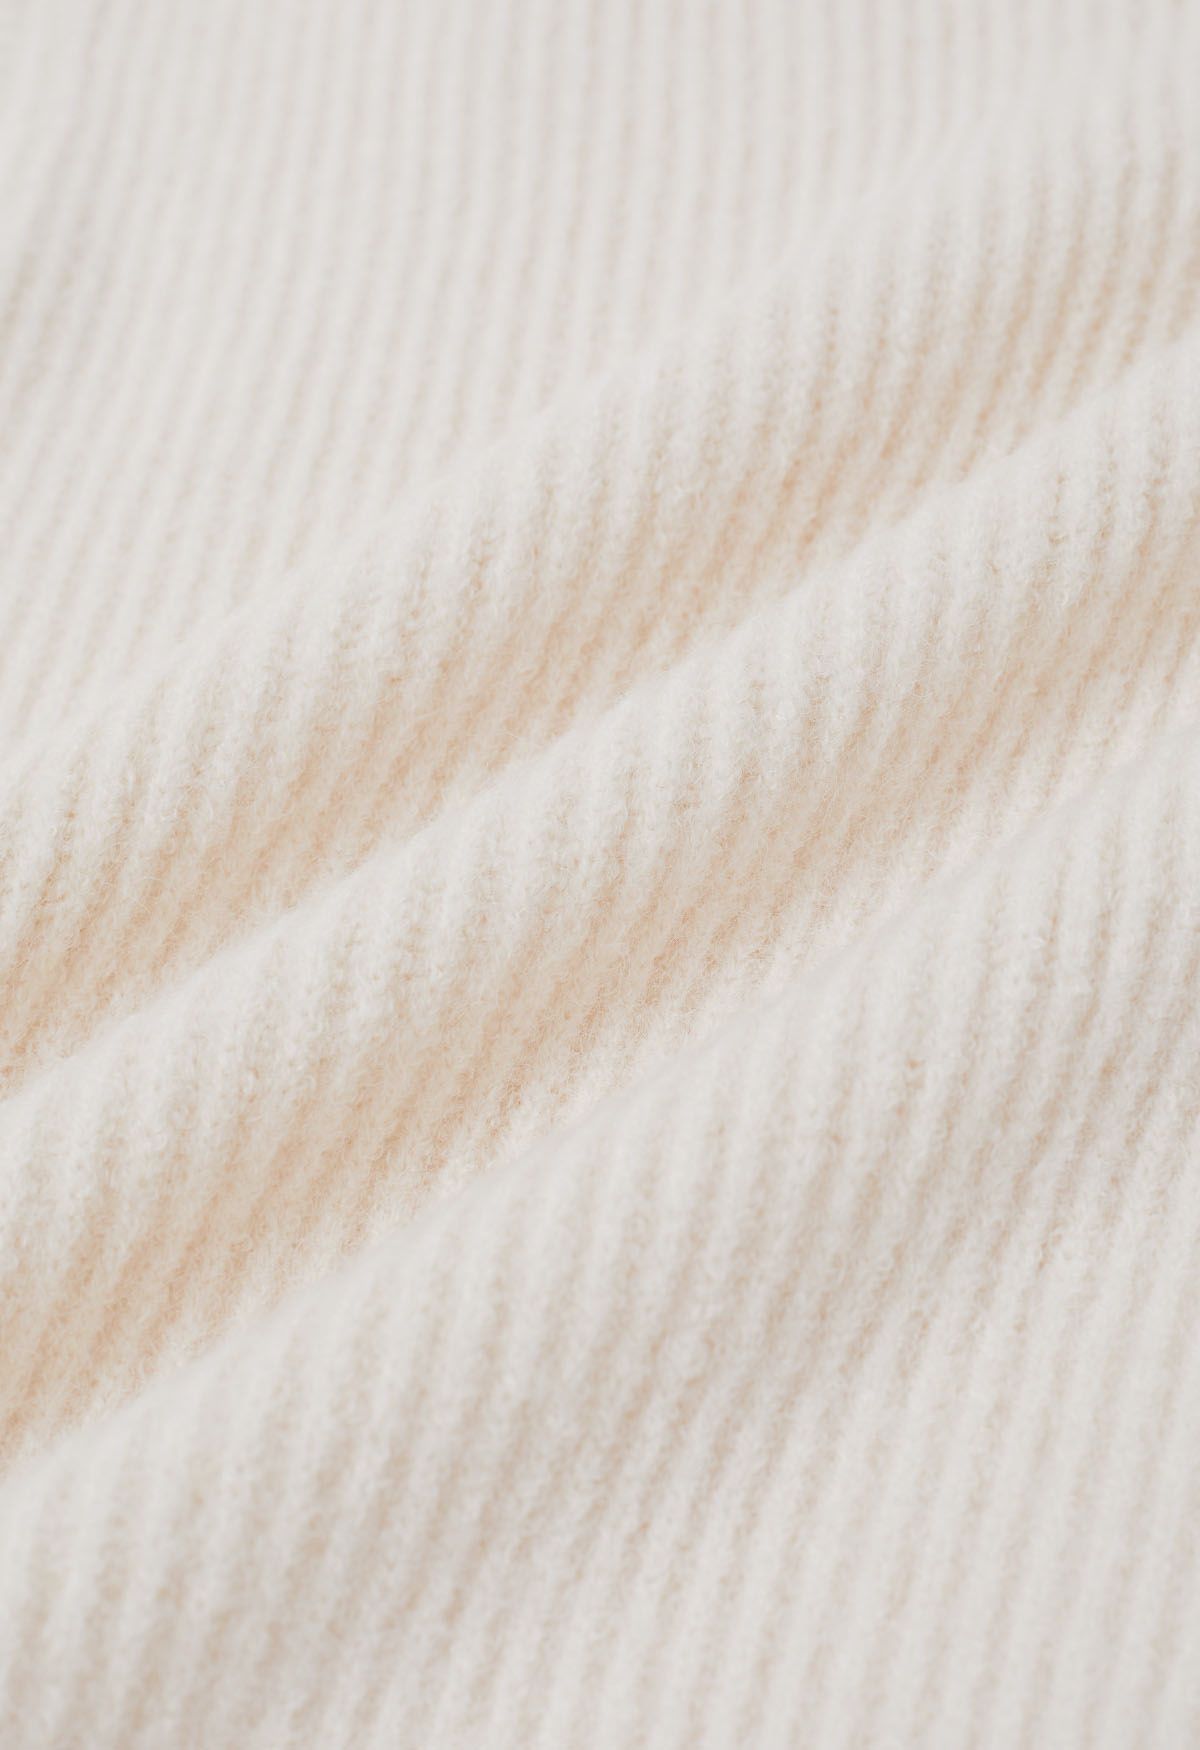 Solid Turtleneck Knit Vest in Ivory